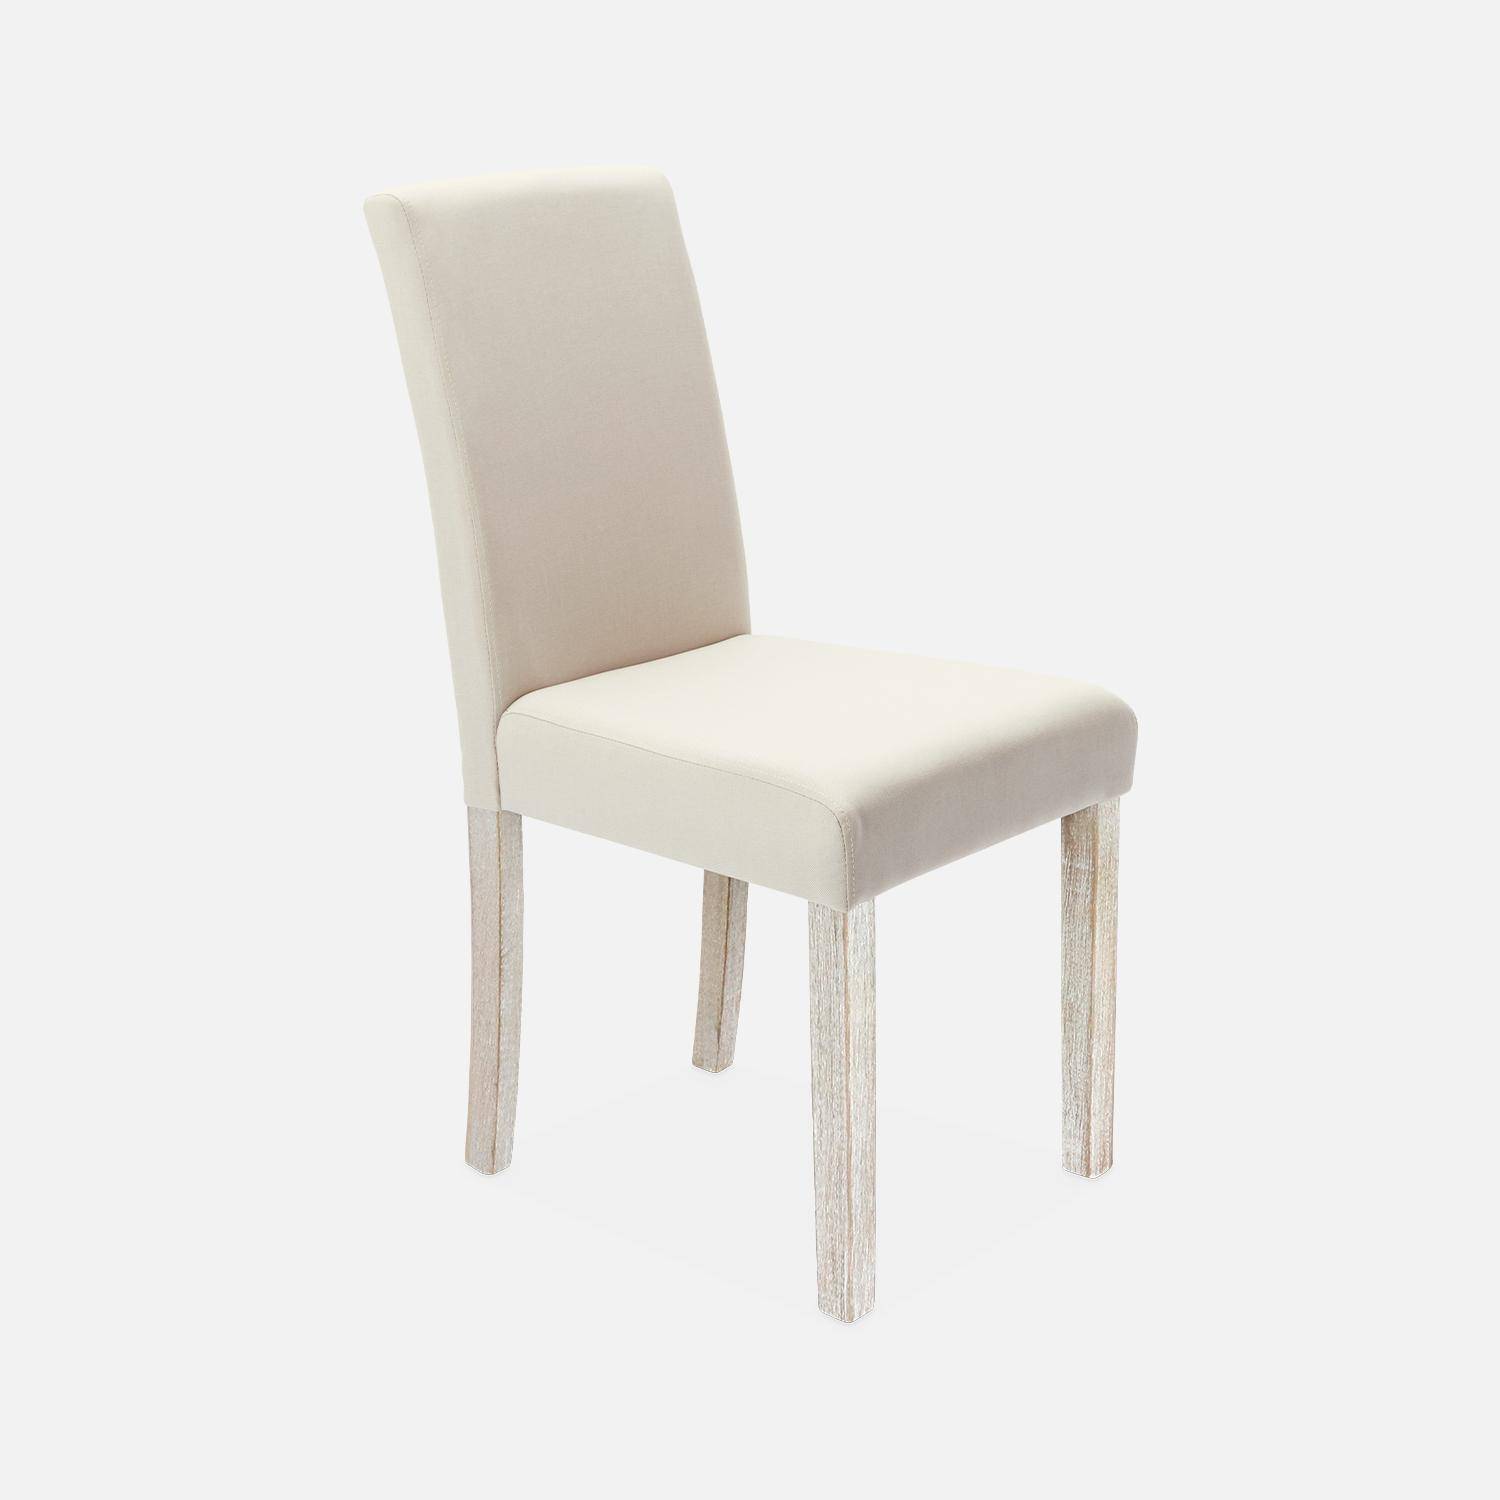 Set di 4 sedie - Rita - sedie in tessuto, gambe in legno ceruleo, beige Photo3